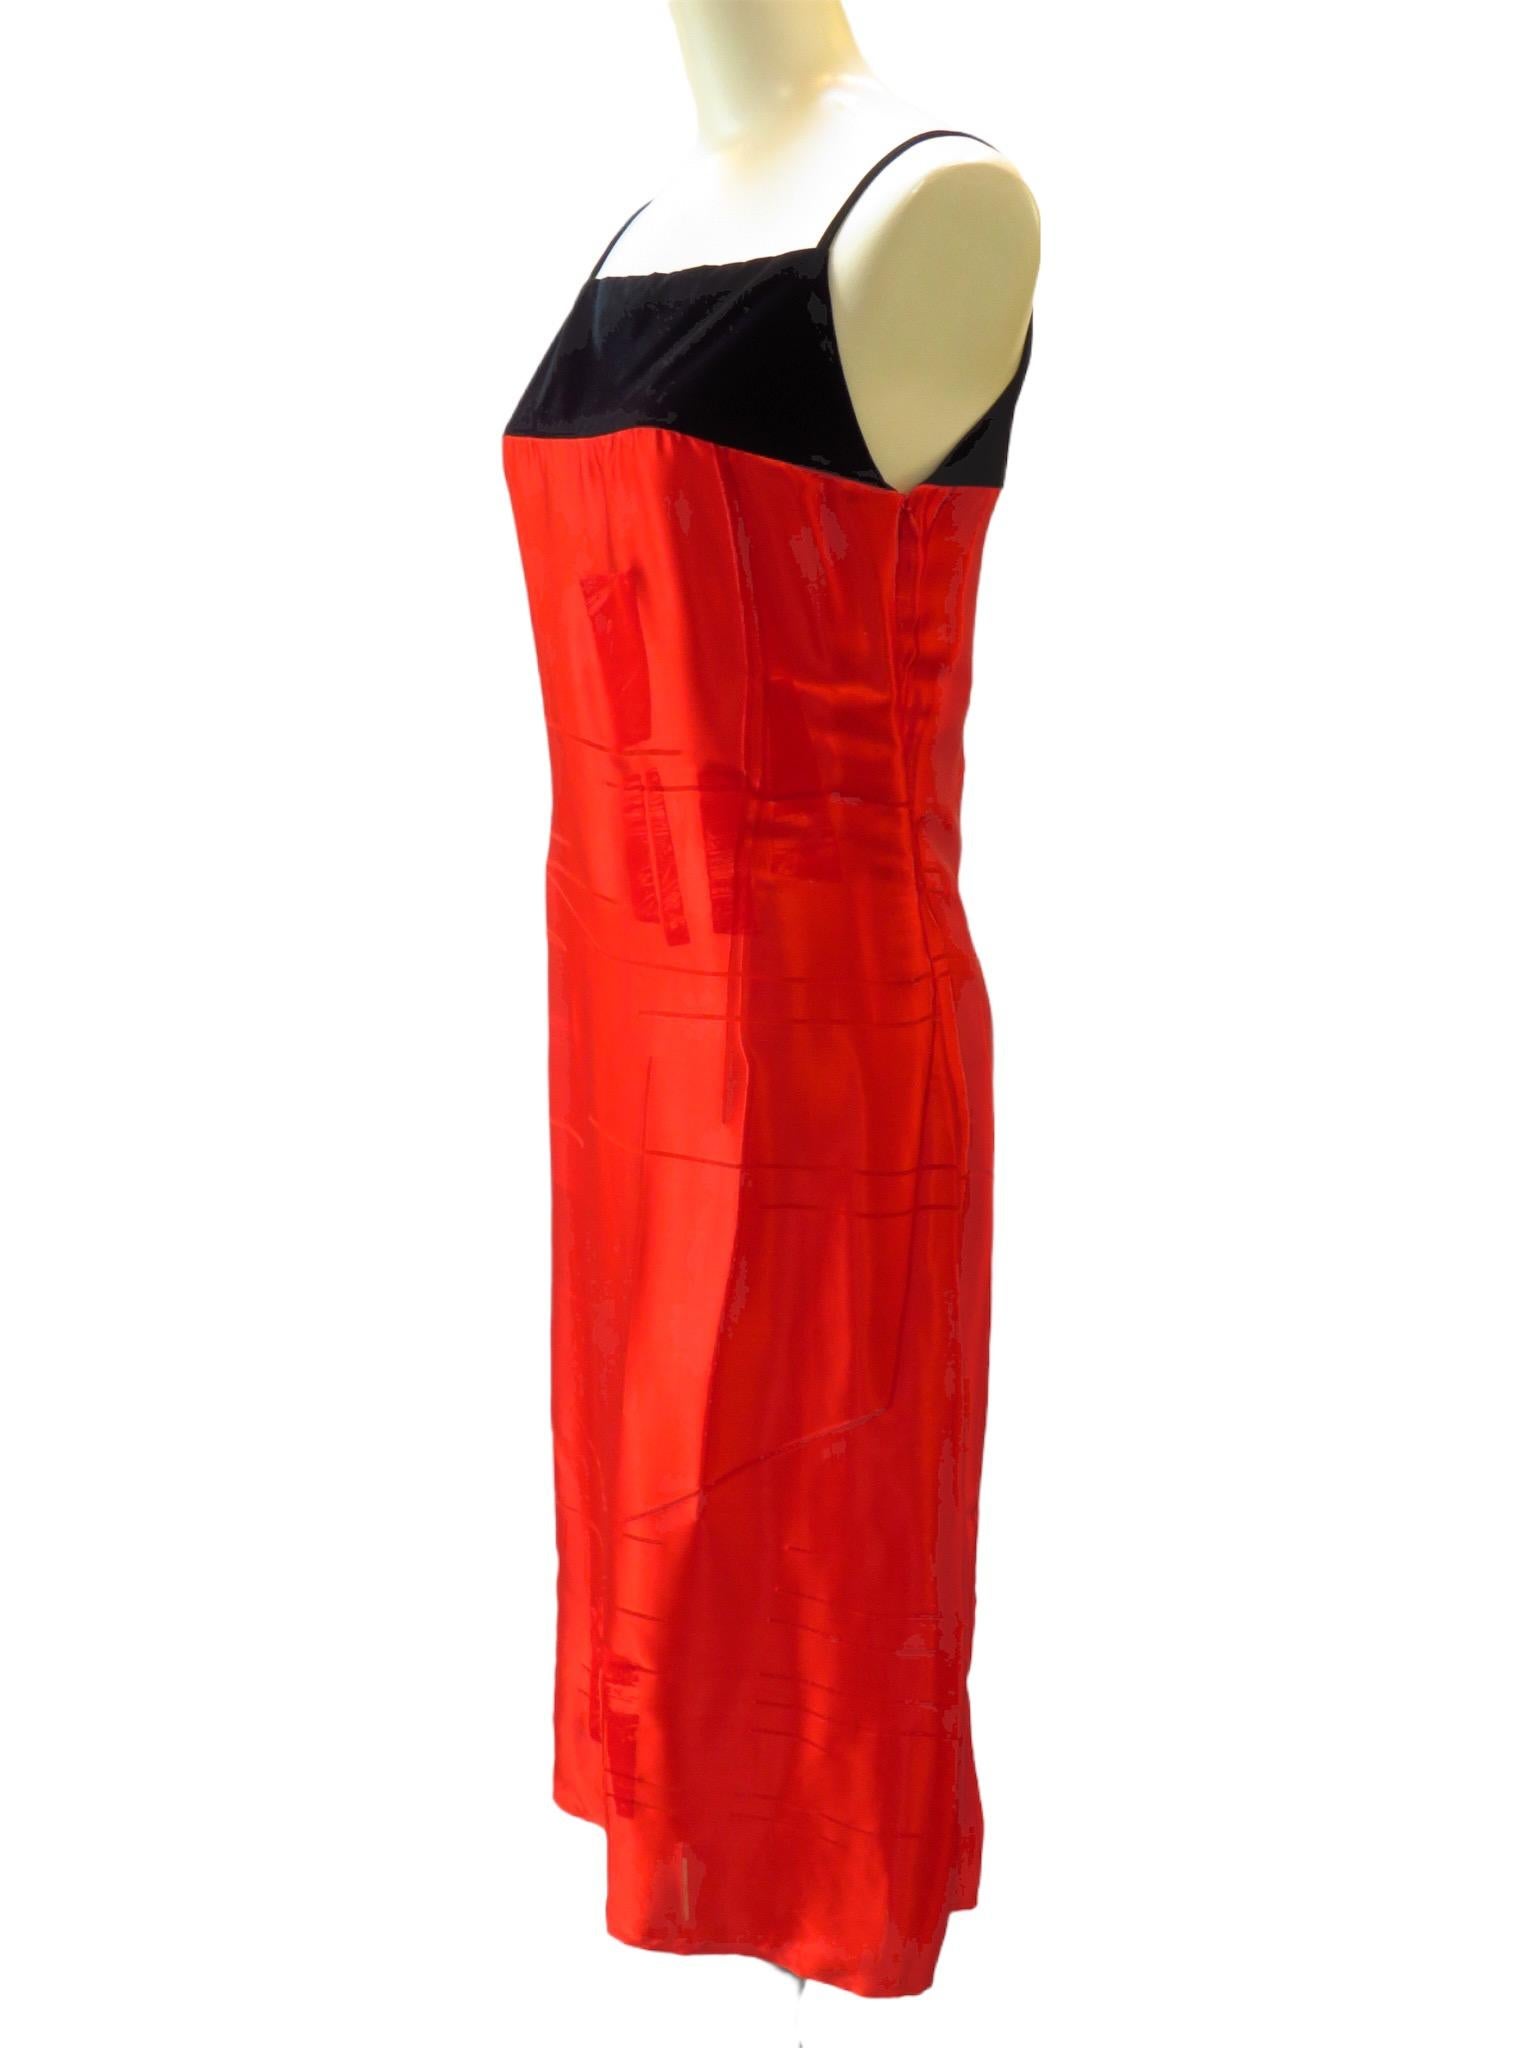 Du velours noir vient couronner cette robe en soie rouge vif de Martine Sitbon. Le tissu en soie est texturé et tombe sous le genou. Fermeture éclair latérale.